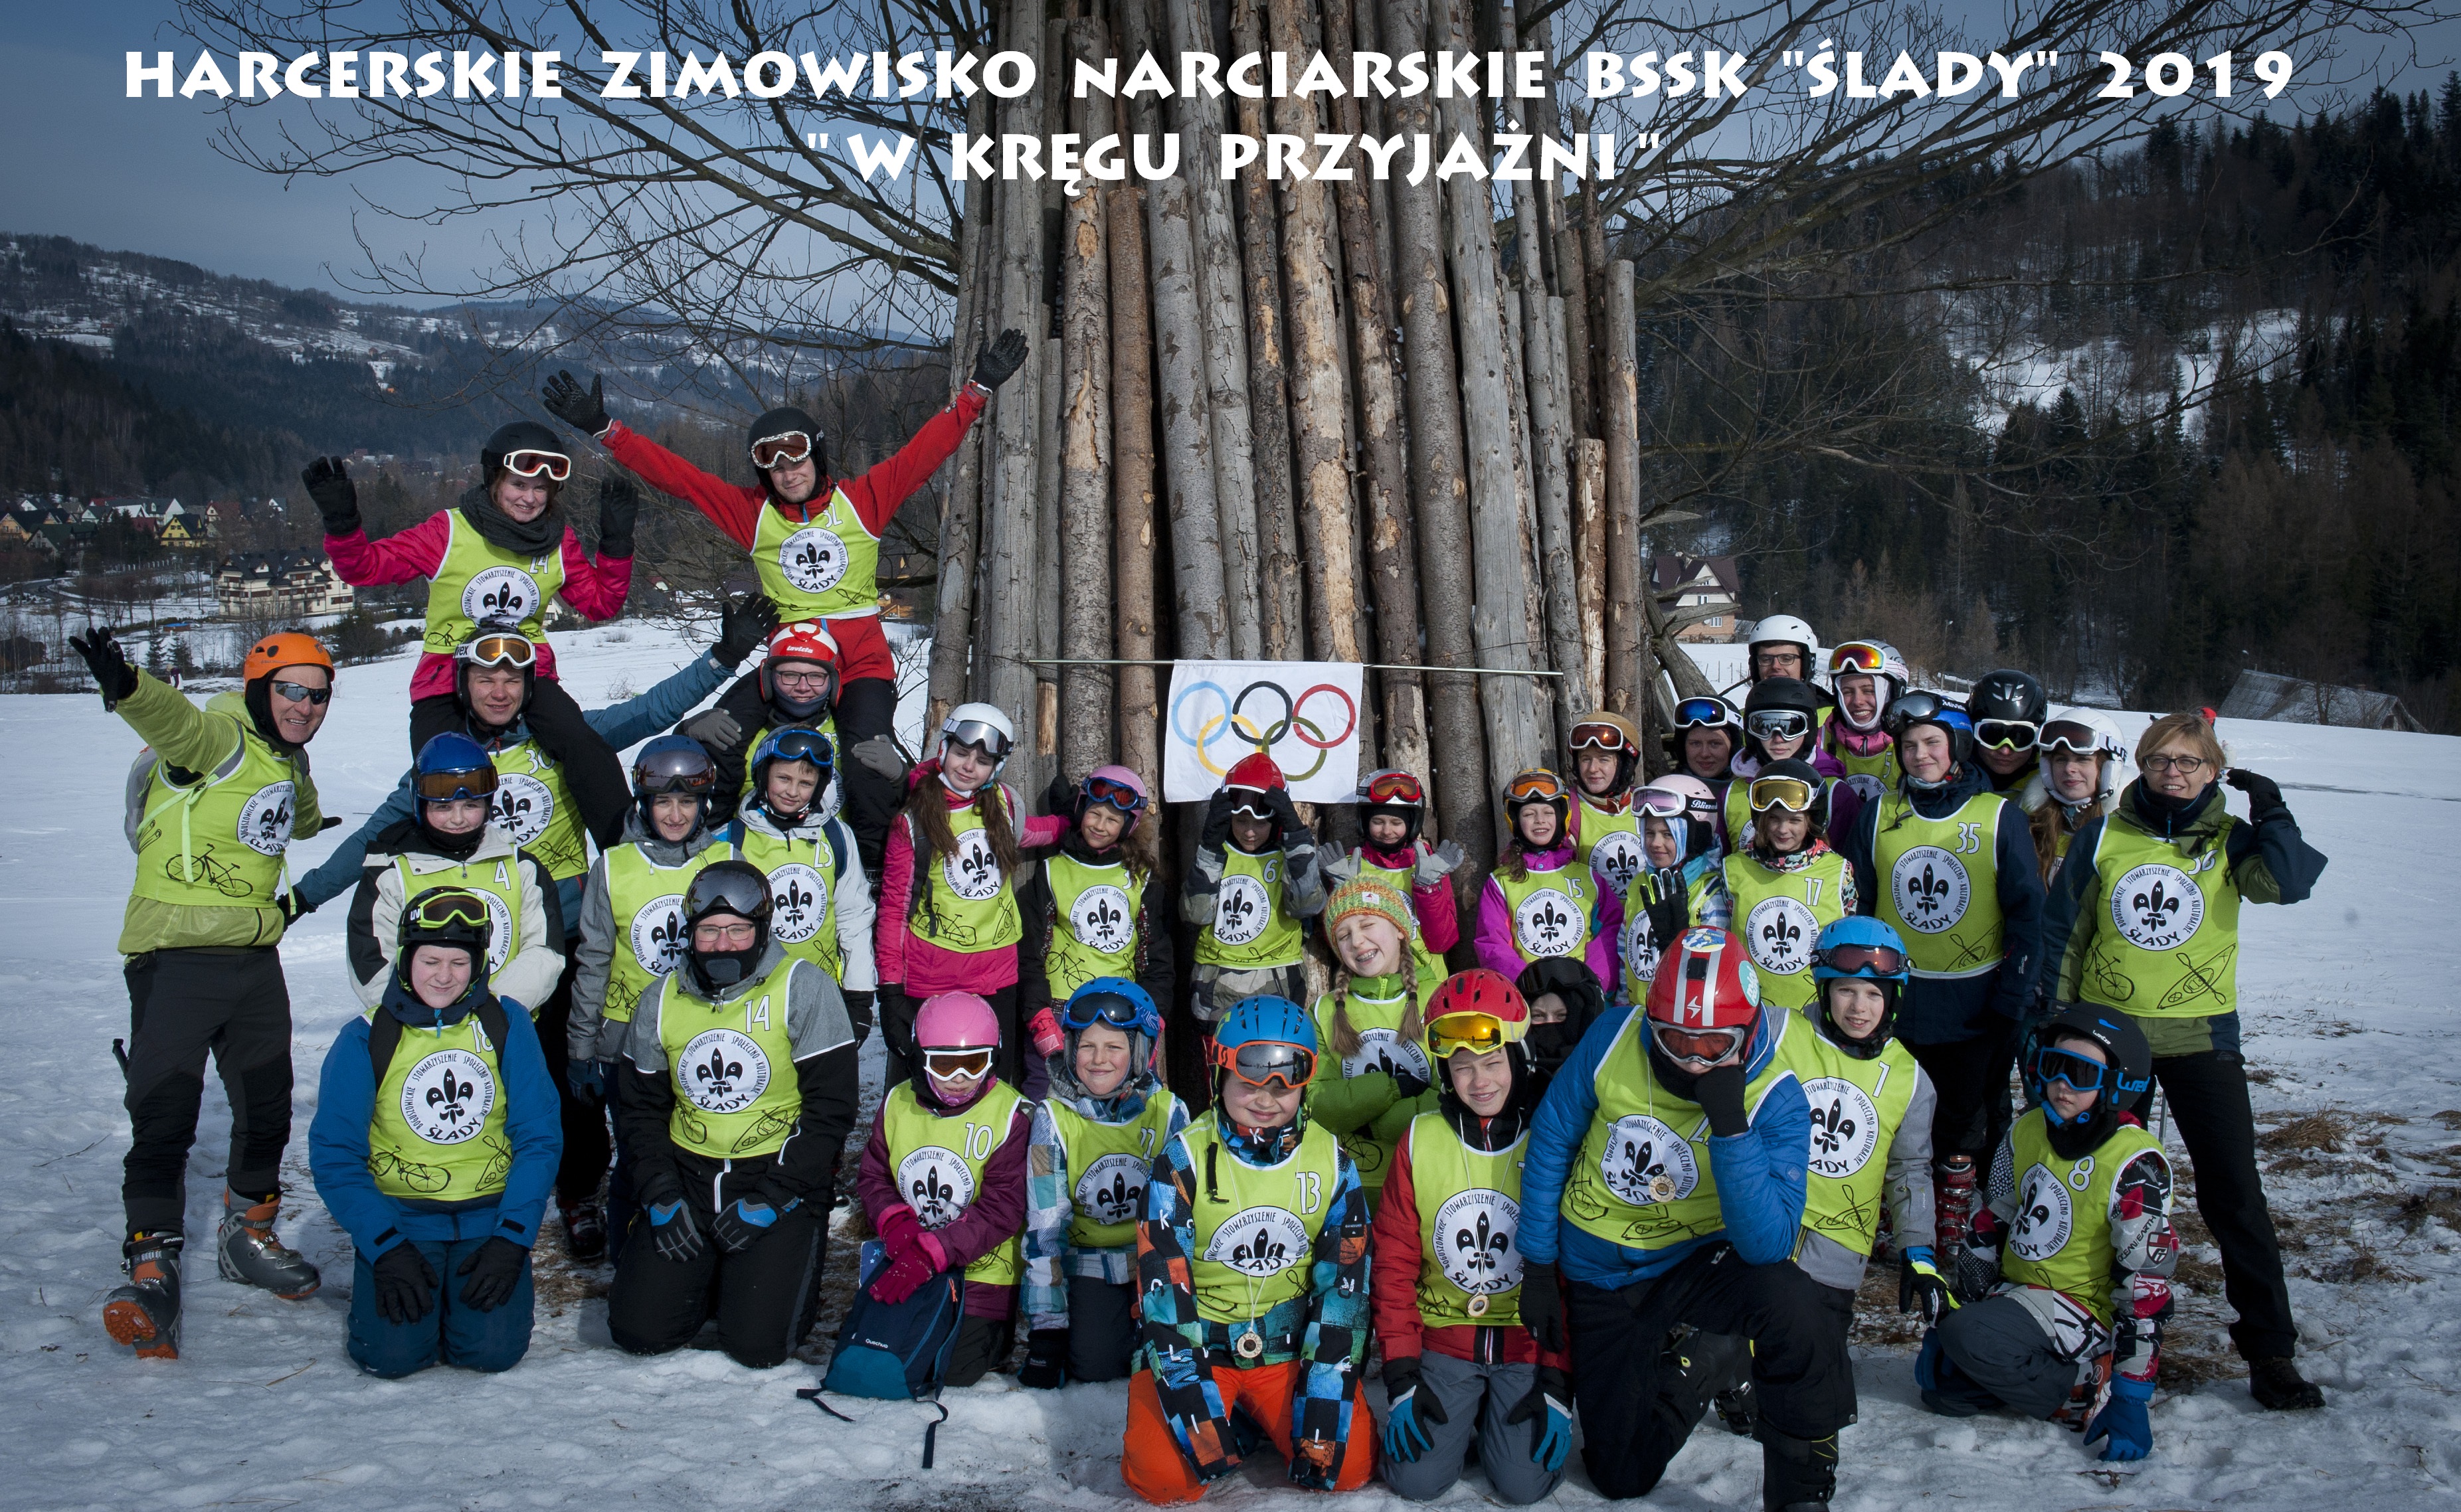 Harcerskie Zimowisko Narciarskie BSSK „Ślady” 2019